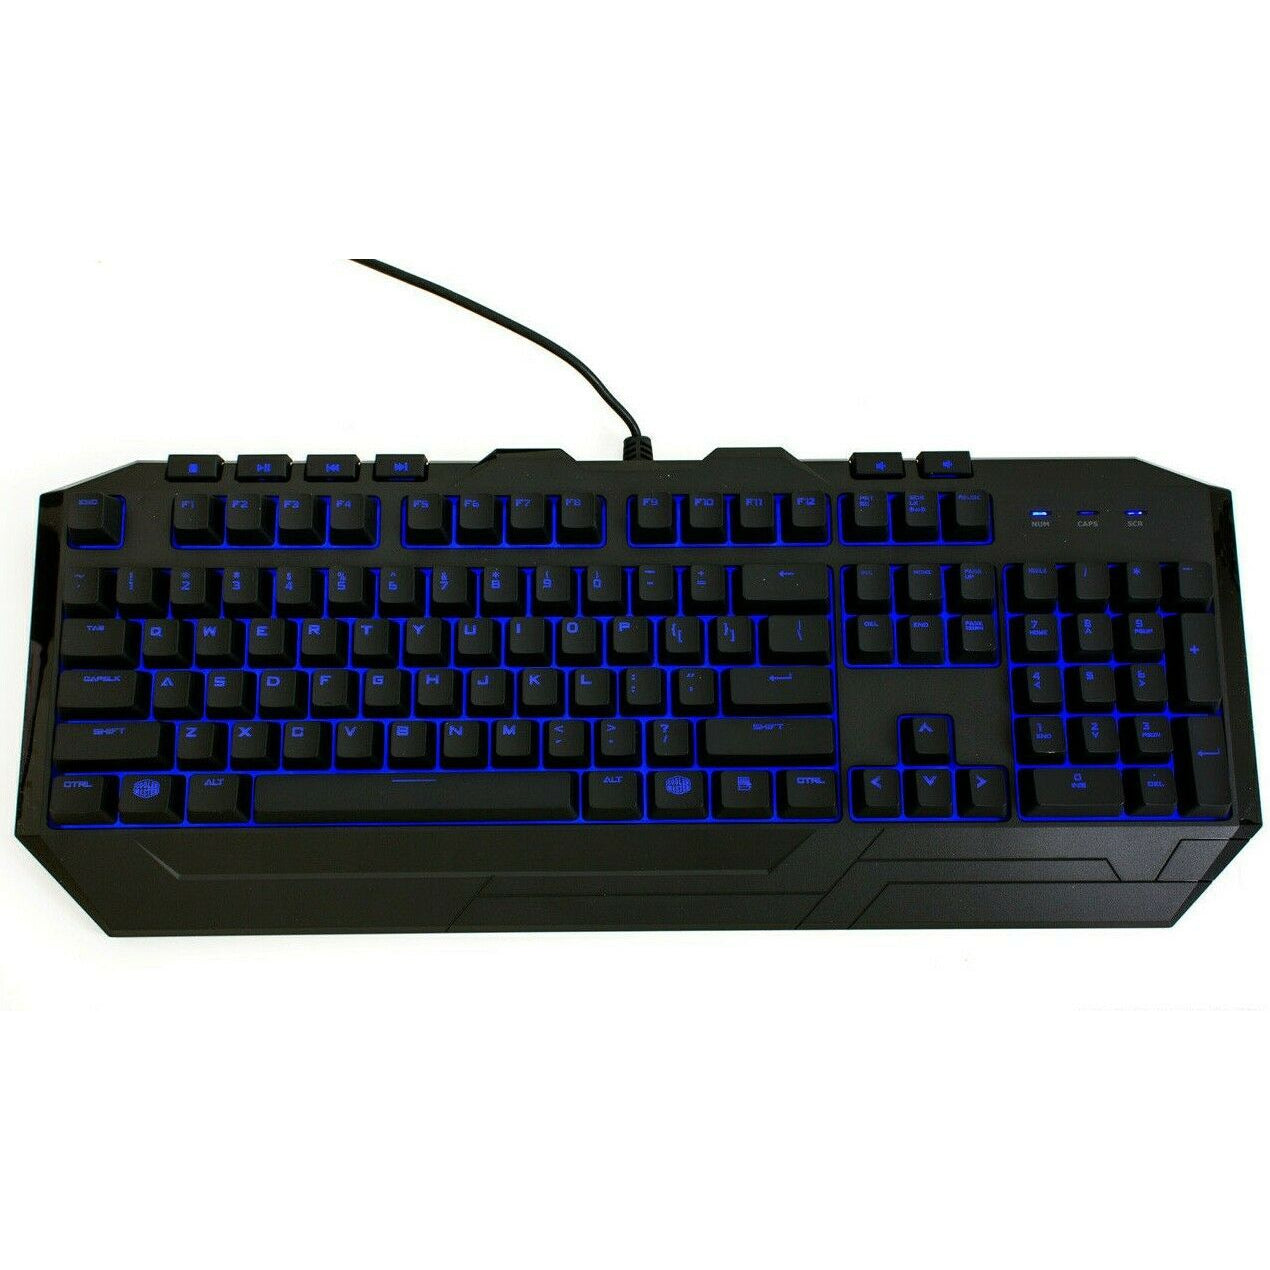 Coolermaster Devastator III Gaming Keyboard